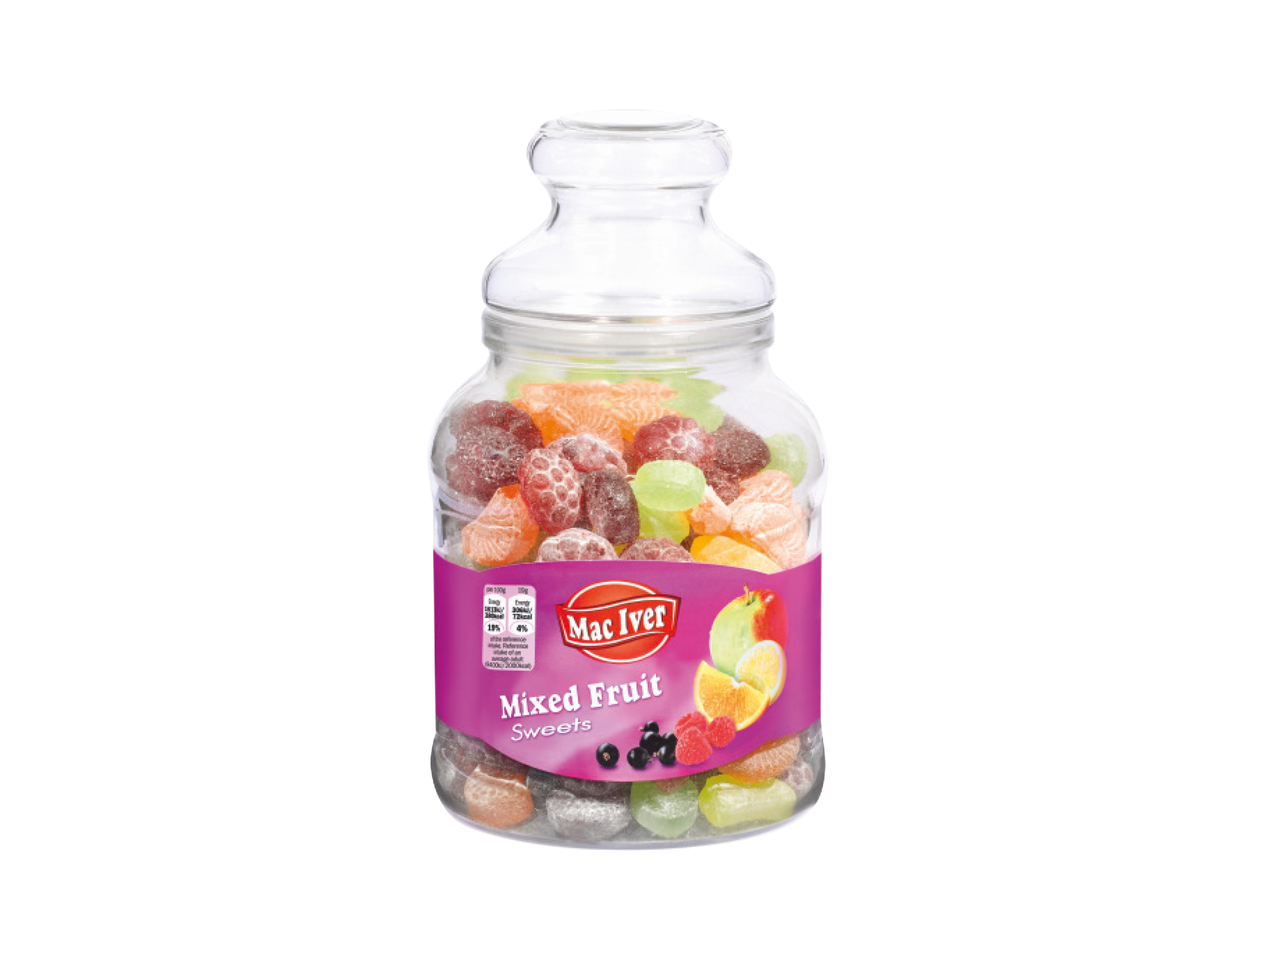 Mac Iver Fruit Sweets in Jar